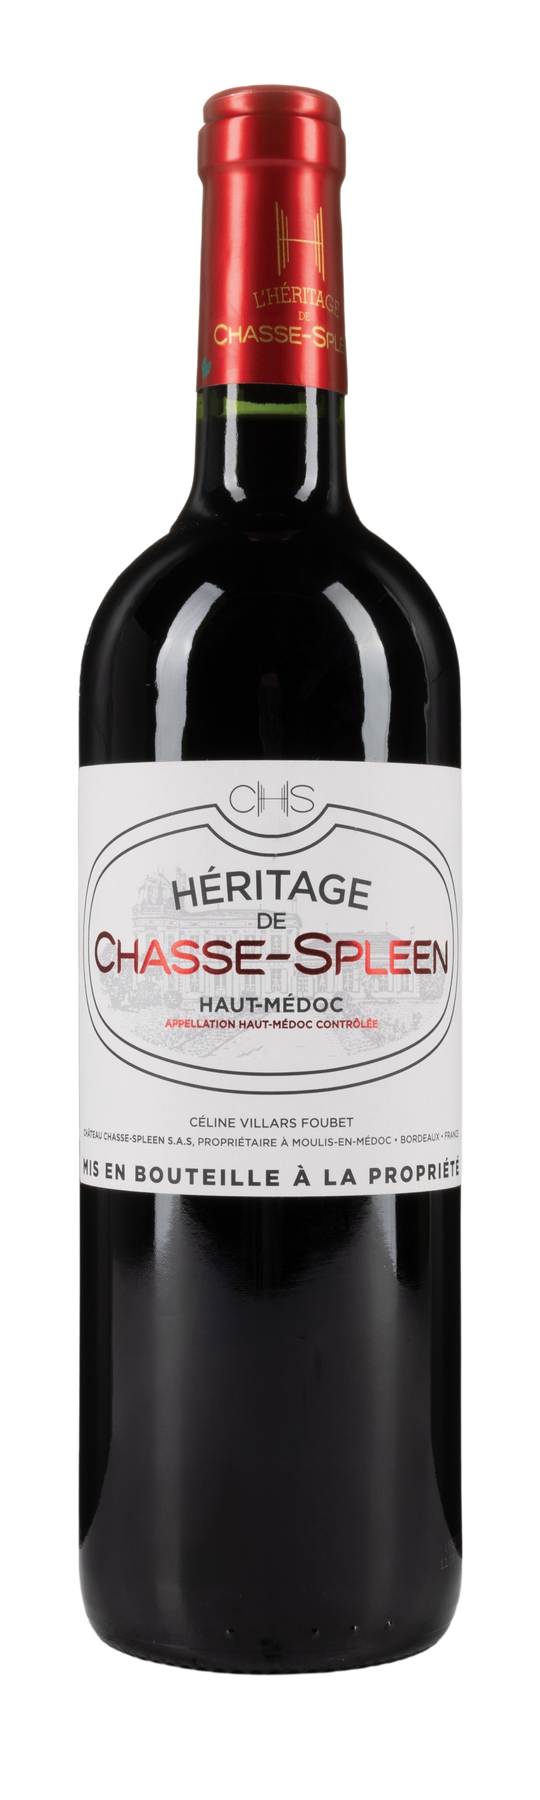 Château Chasse Spleen L'Héritage 2020 75cl Haut-Médoc AOP -